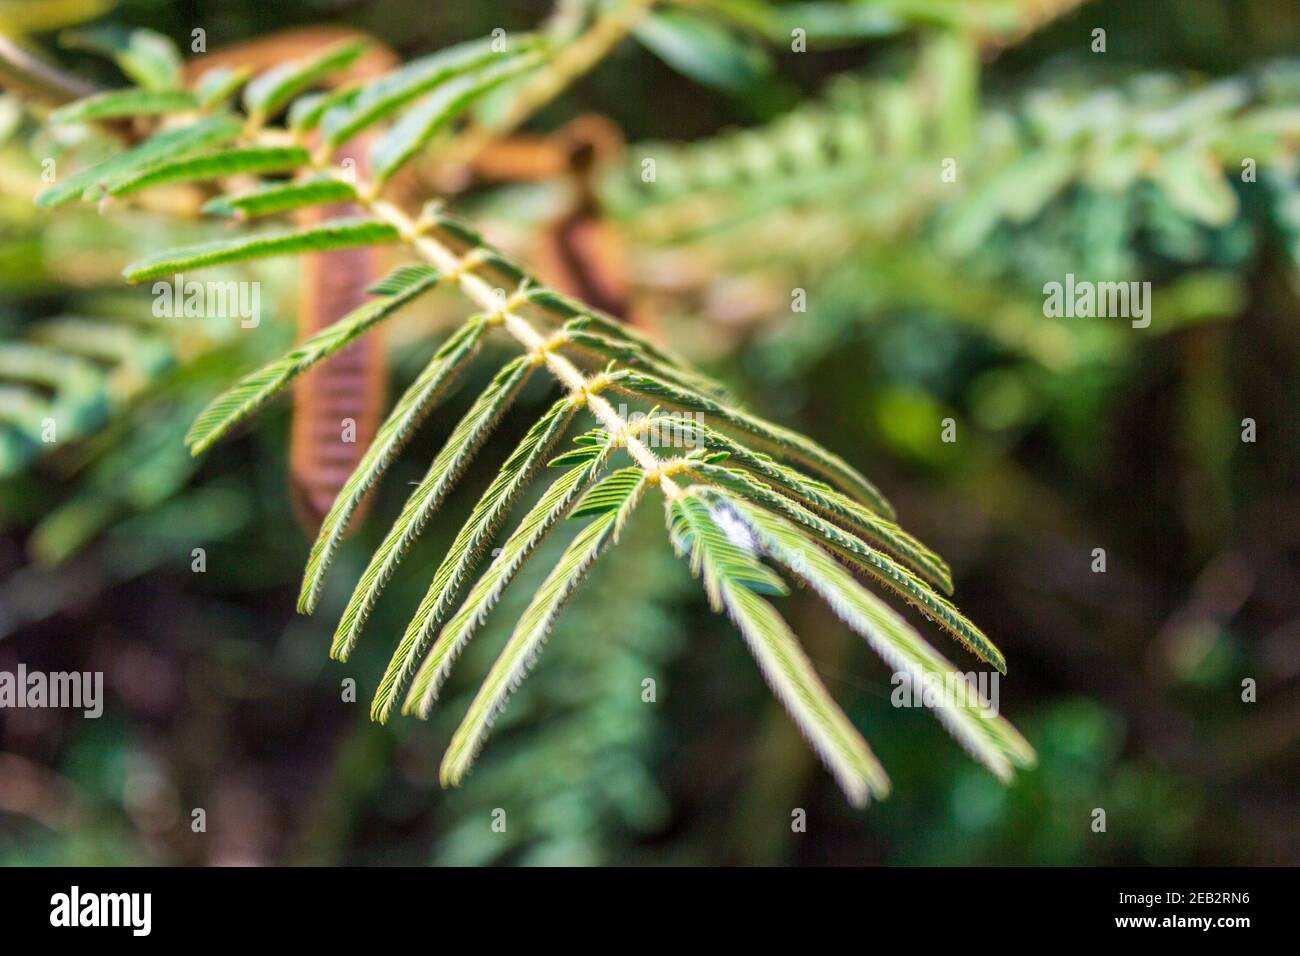 Une touche moi non, honte-plante ou plante sensible; Mimosa pudica a une réaction fascinante quand touché. Les lames se retirent et s'affaisse. Banque D'Images